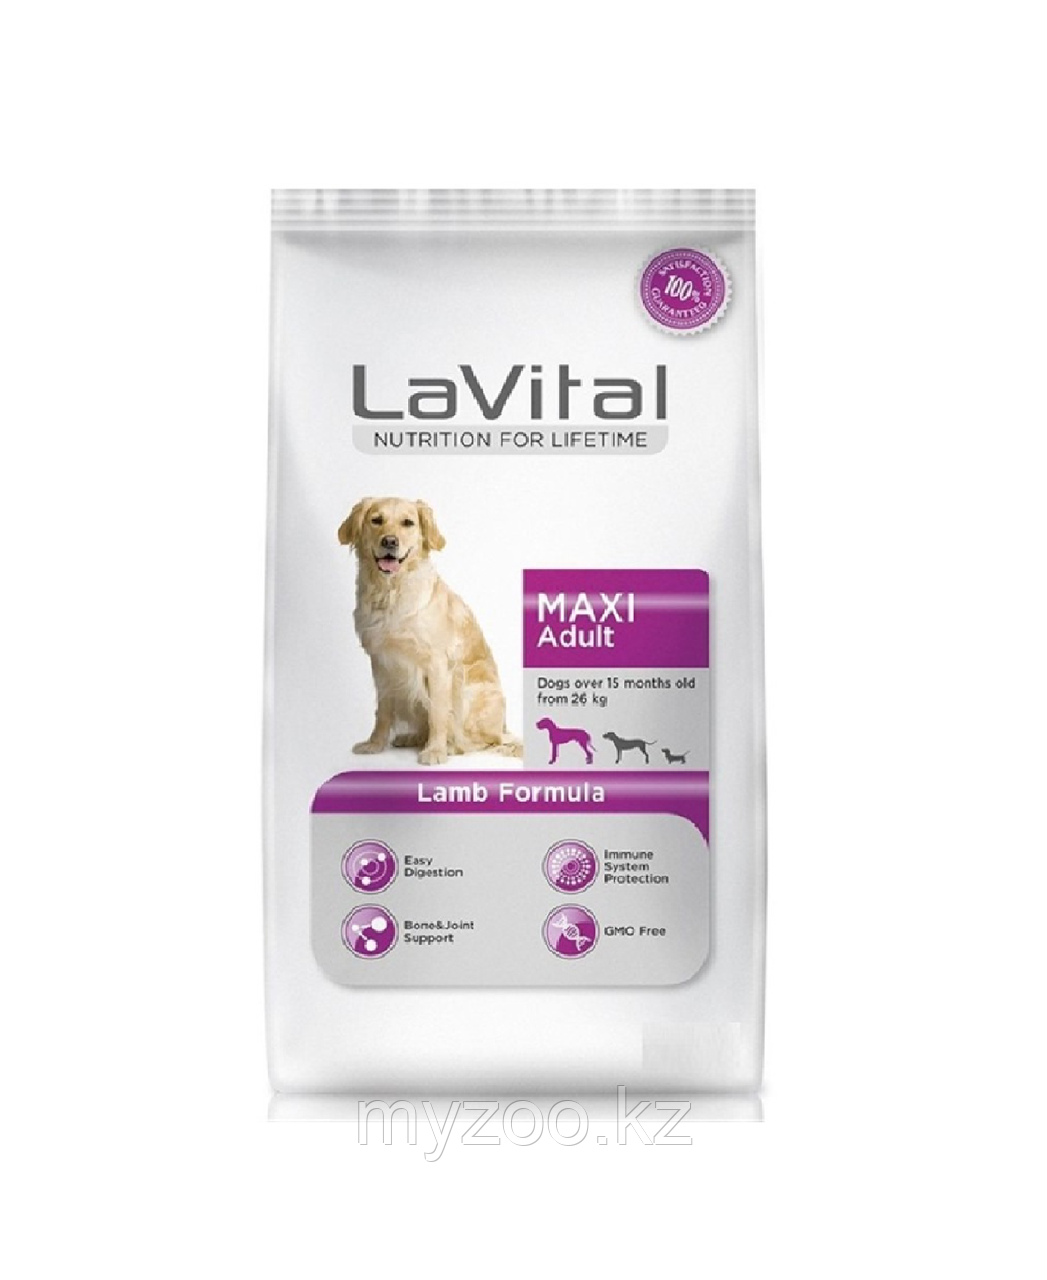 Lavital MAXI ADULT LAMB для собак  крупных пород с ягненком, 3кг